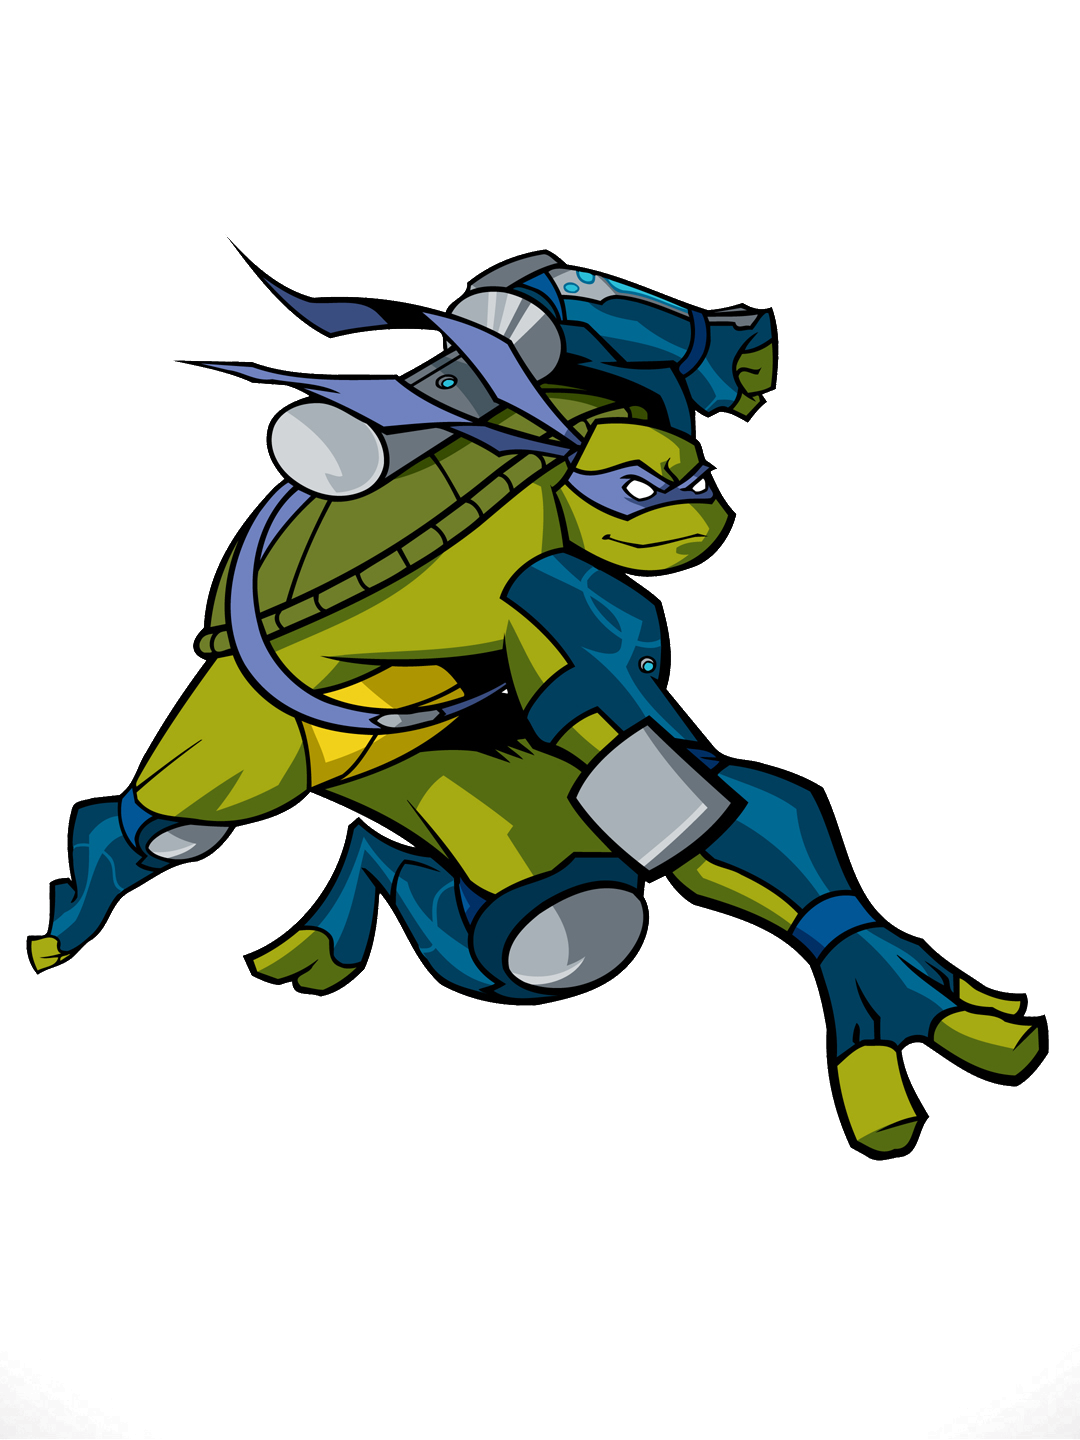 Image - Teenage Mutant Ninja Turtles Fast Forward 7086138.png | VS ...